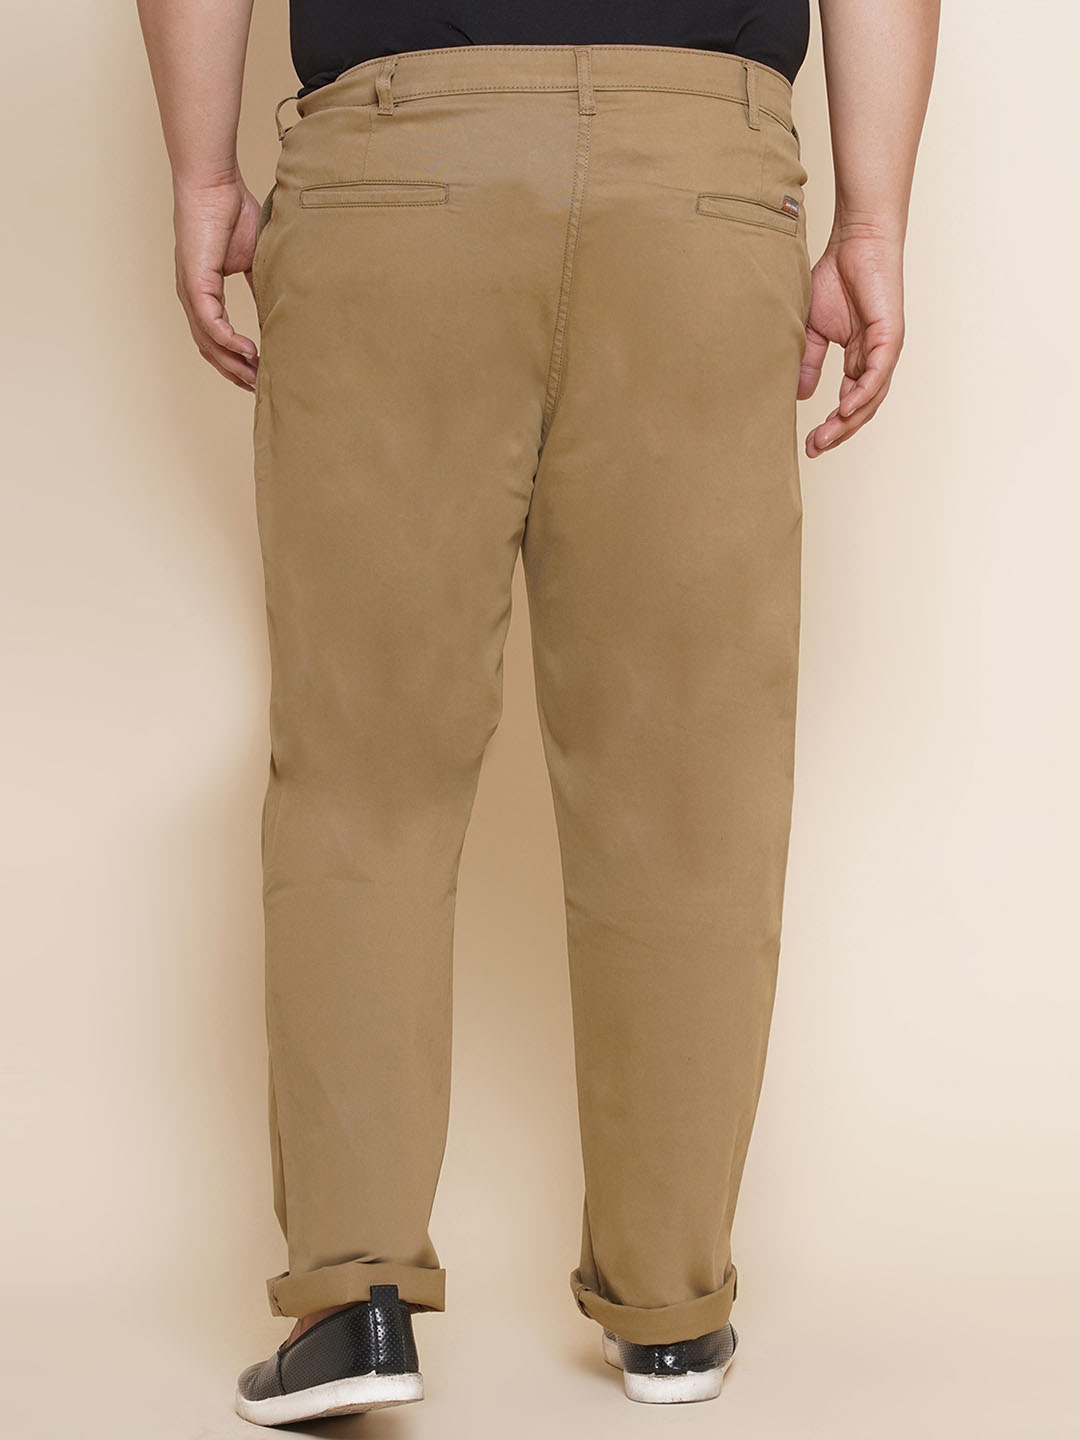 bottomwear/trousers/JPTR21012/jptr21012-5.jpg